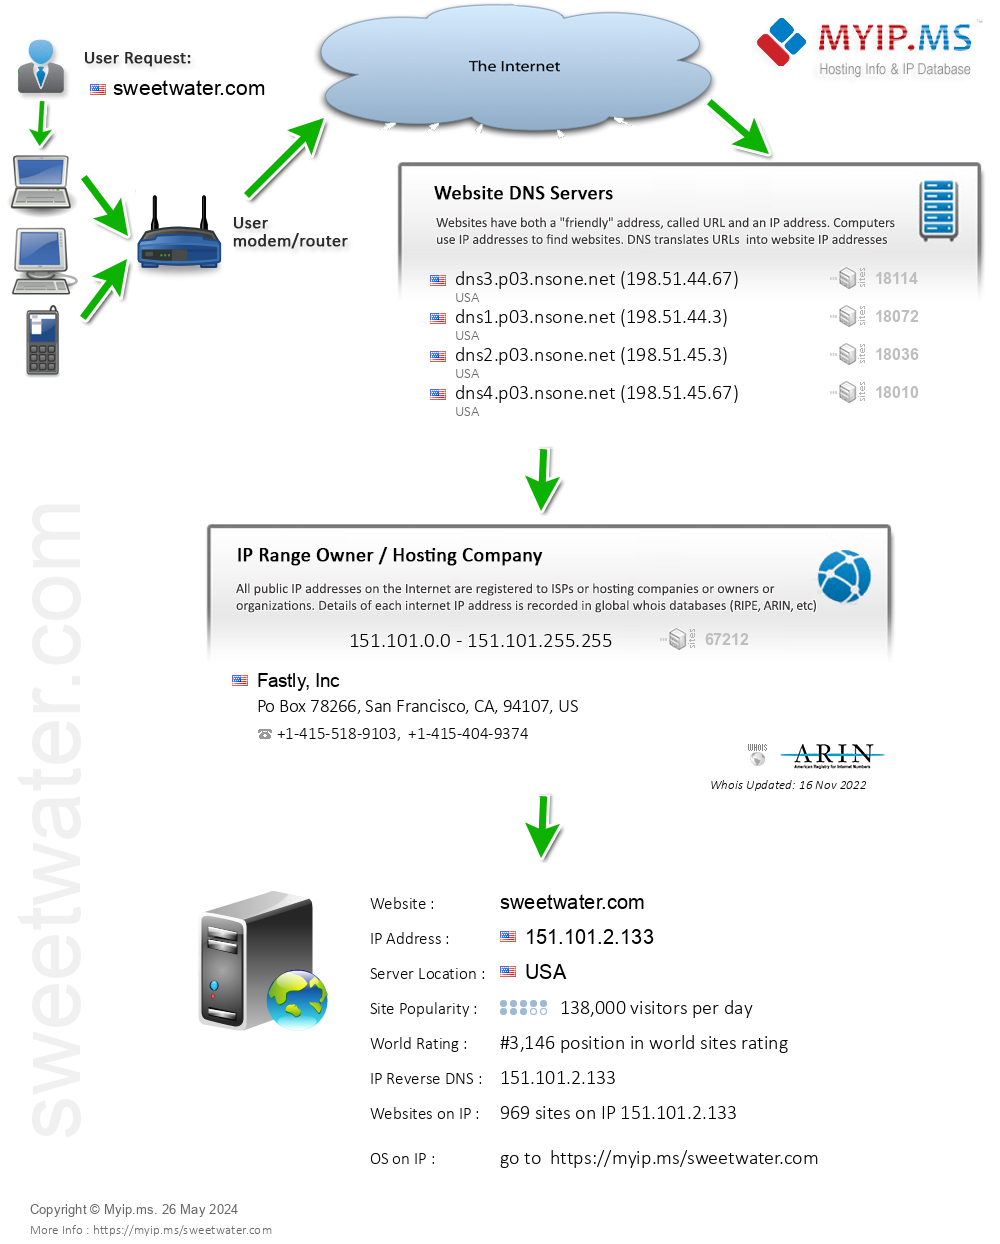 Sweetwater.com - Website Hosting Visual IP Diagram